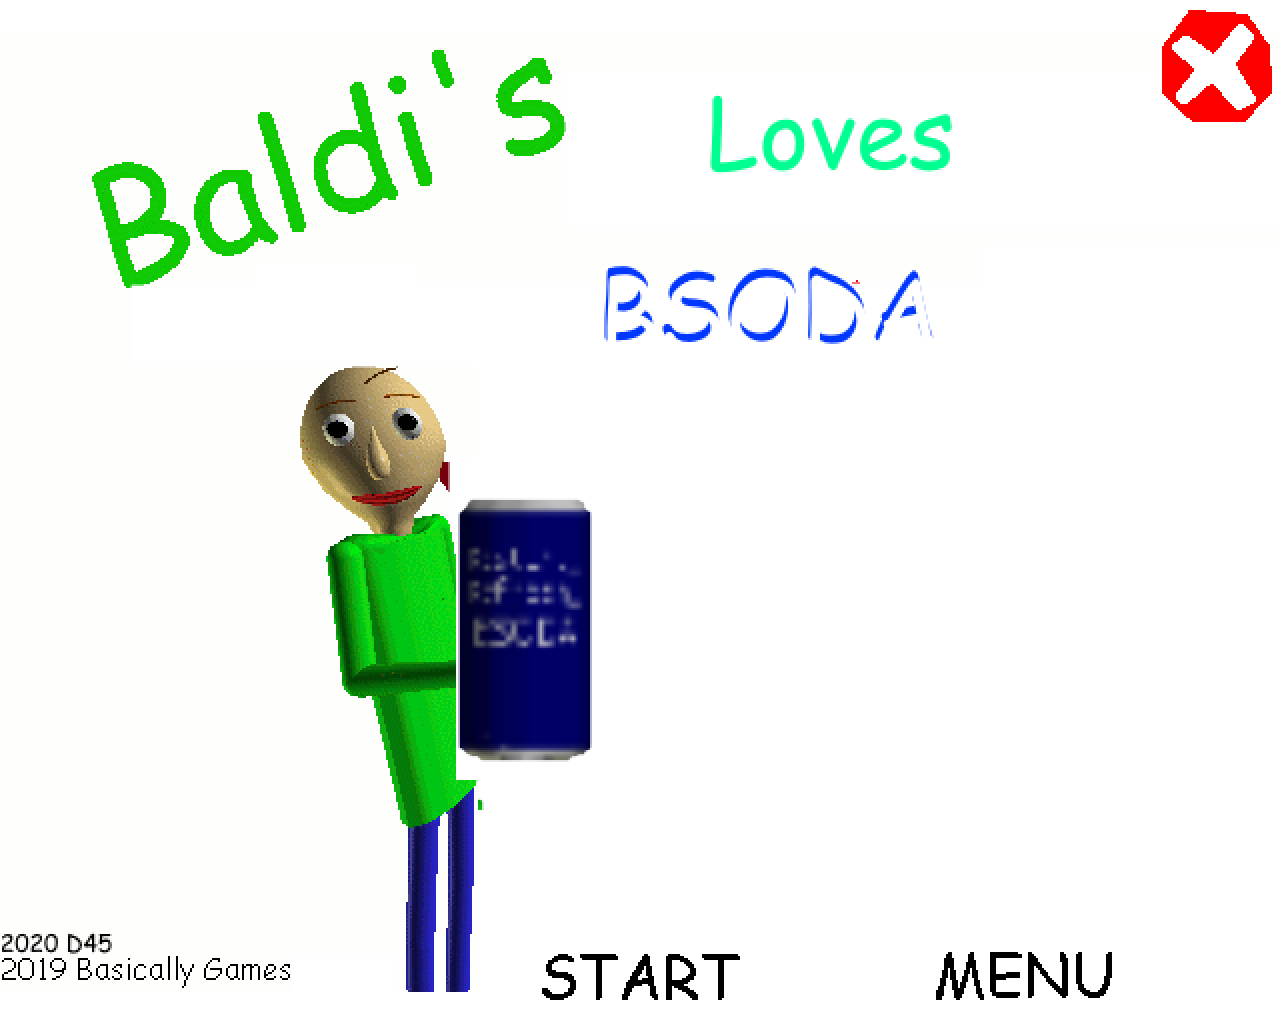 BSODA БАЛДИ. Baldi's Basics бсода. Baldi Loves BSODA. BSODA автомат. Baldi love